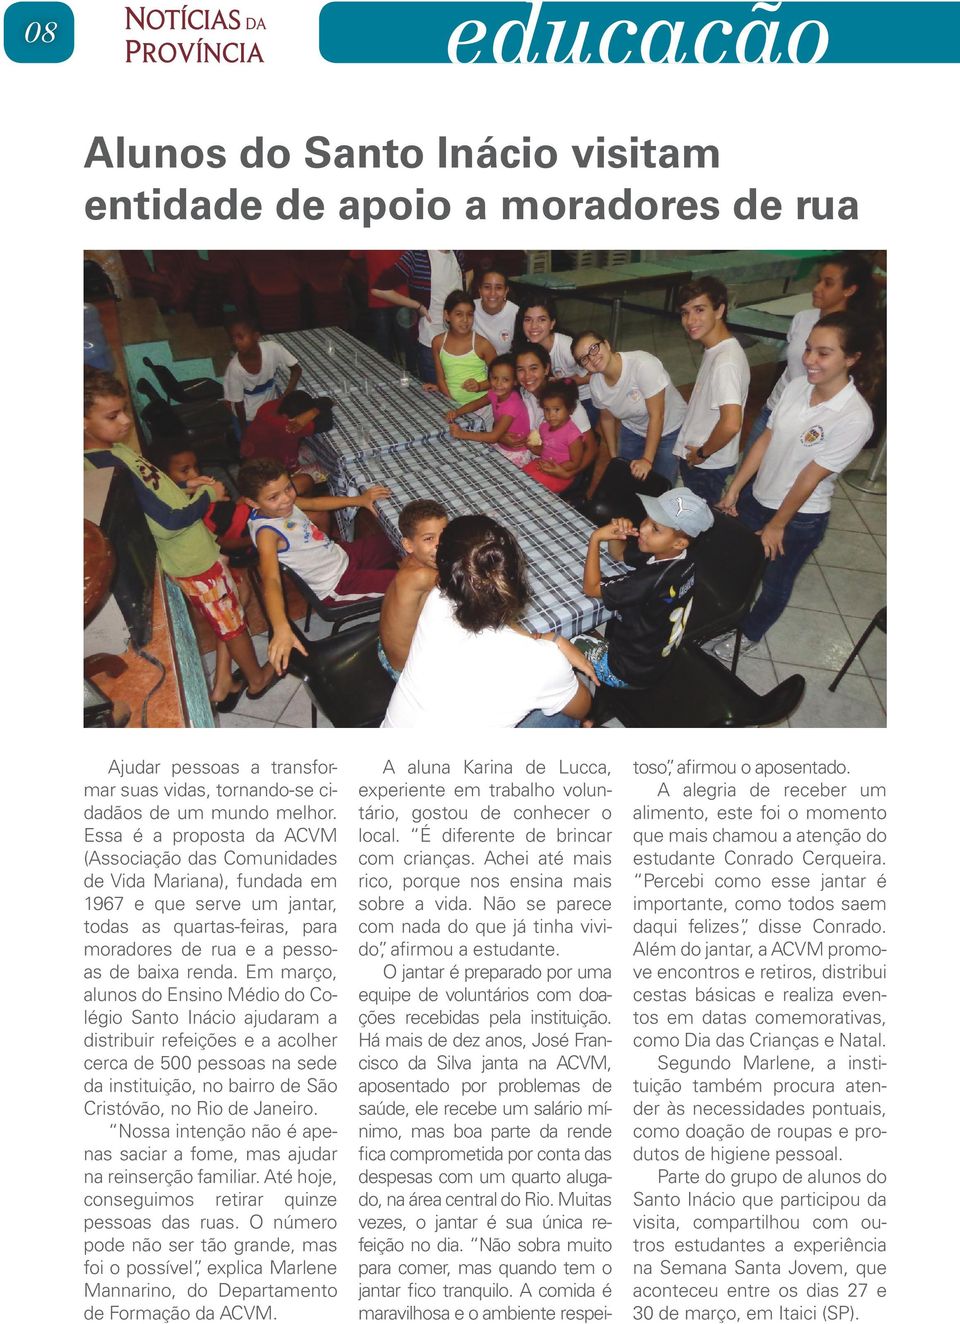 Em março, alunos do Ensino Médio do Colégio Santo Inácio ajudaram a distribuir refeições e a acolher cerca de 500 pessoas na sede da instituição, no bairro de São Cristóvão, no Rio de Janeiro.